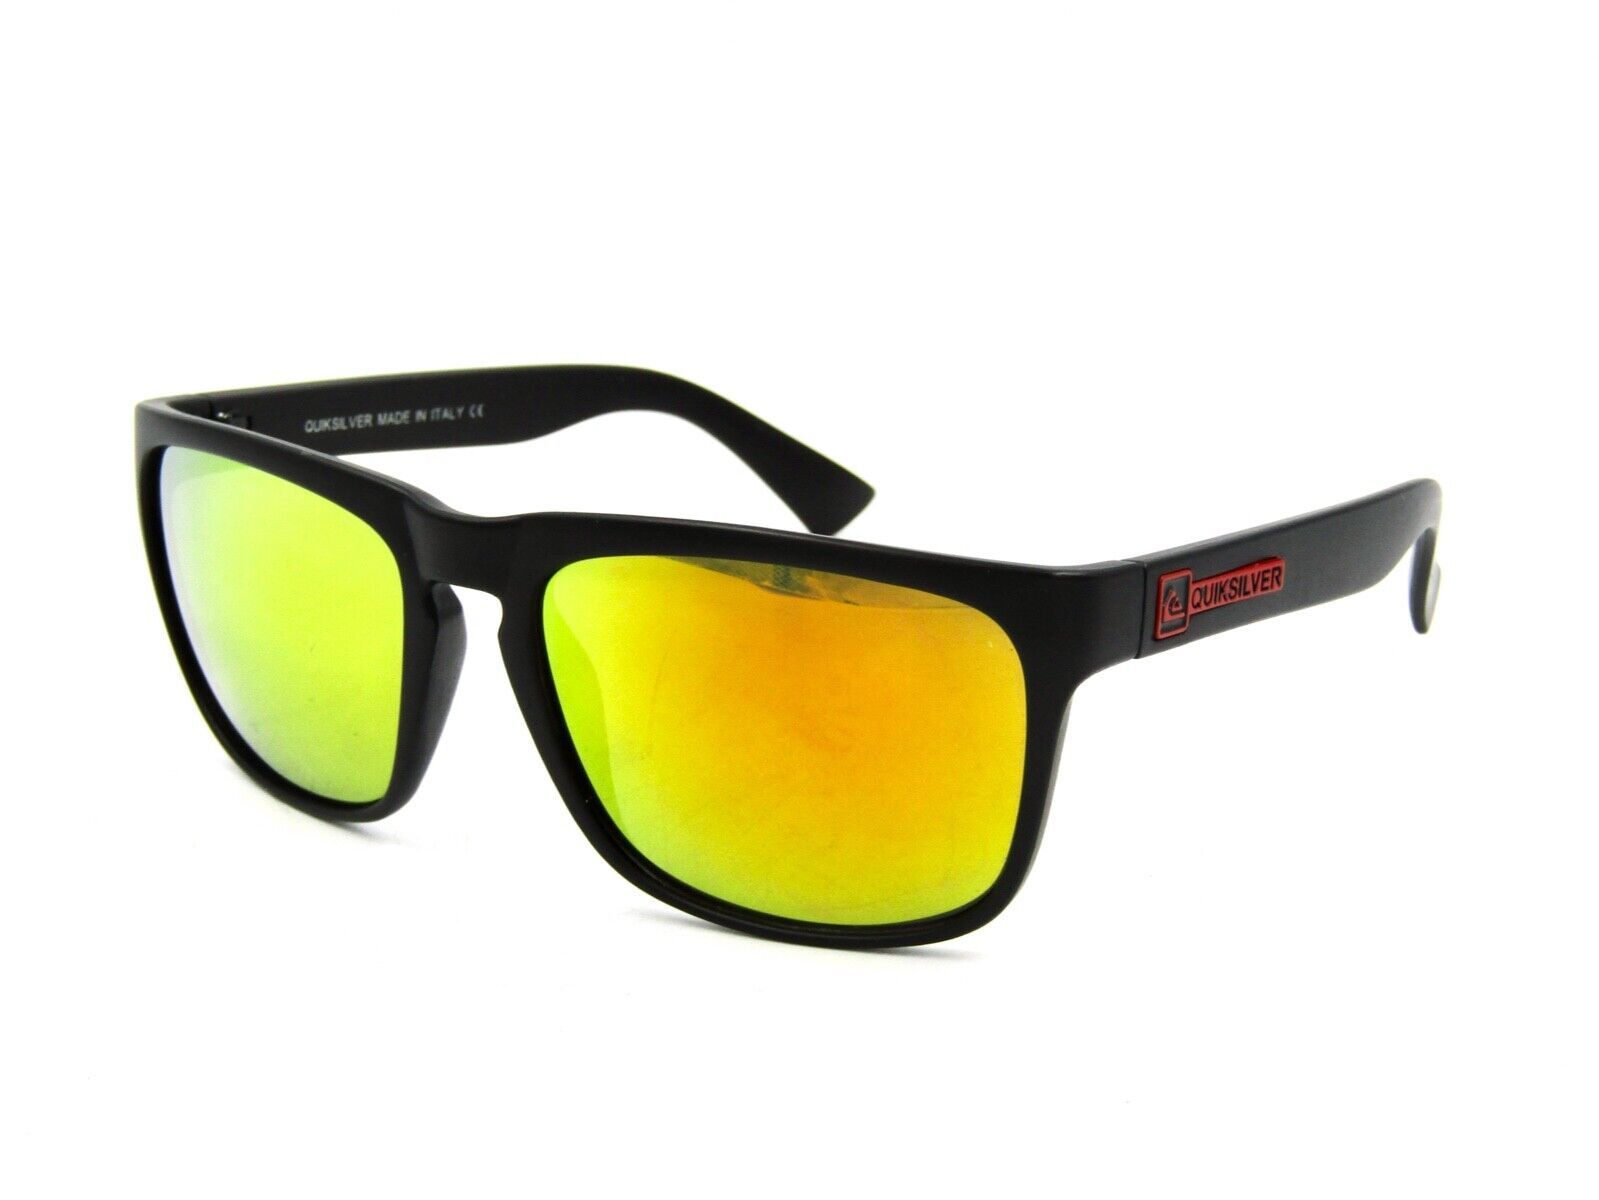 Primary image for QuickSilver Men's Square Sunglasses, Matte Black / Gold Mirrored #B02